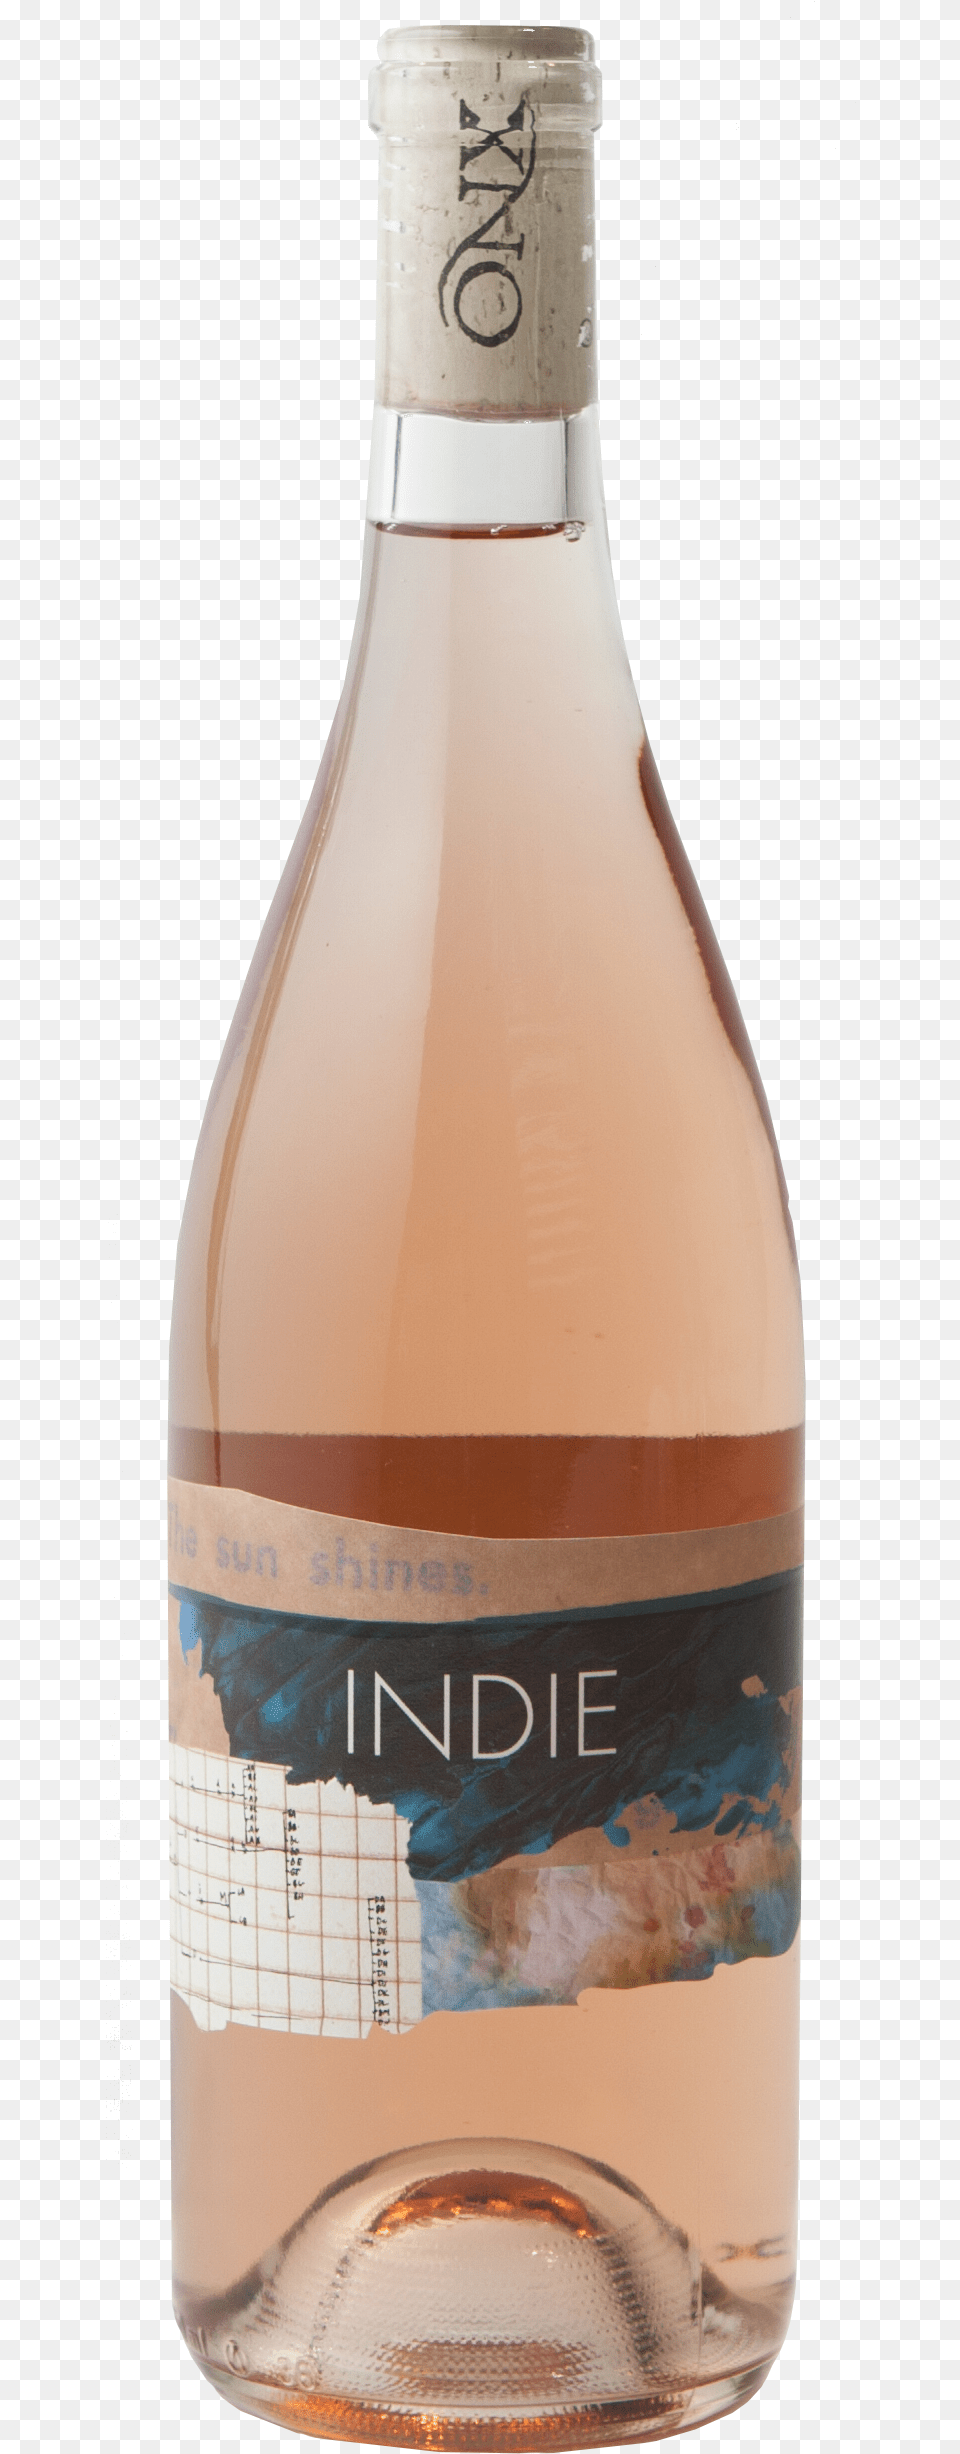 Indie, Alcohol, Beverage, Bottle, Liquor Png Image